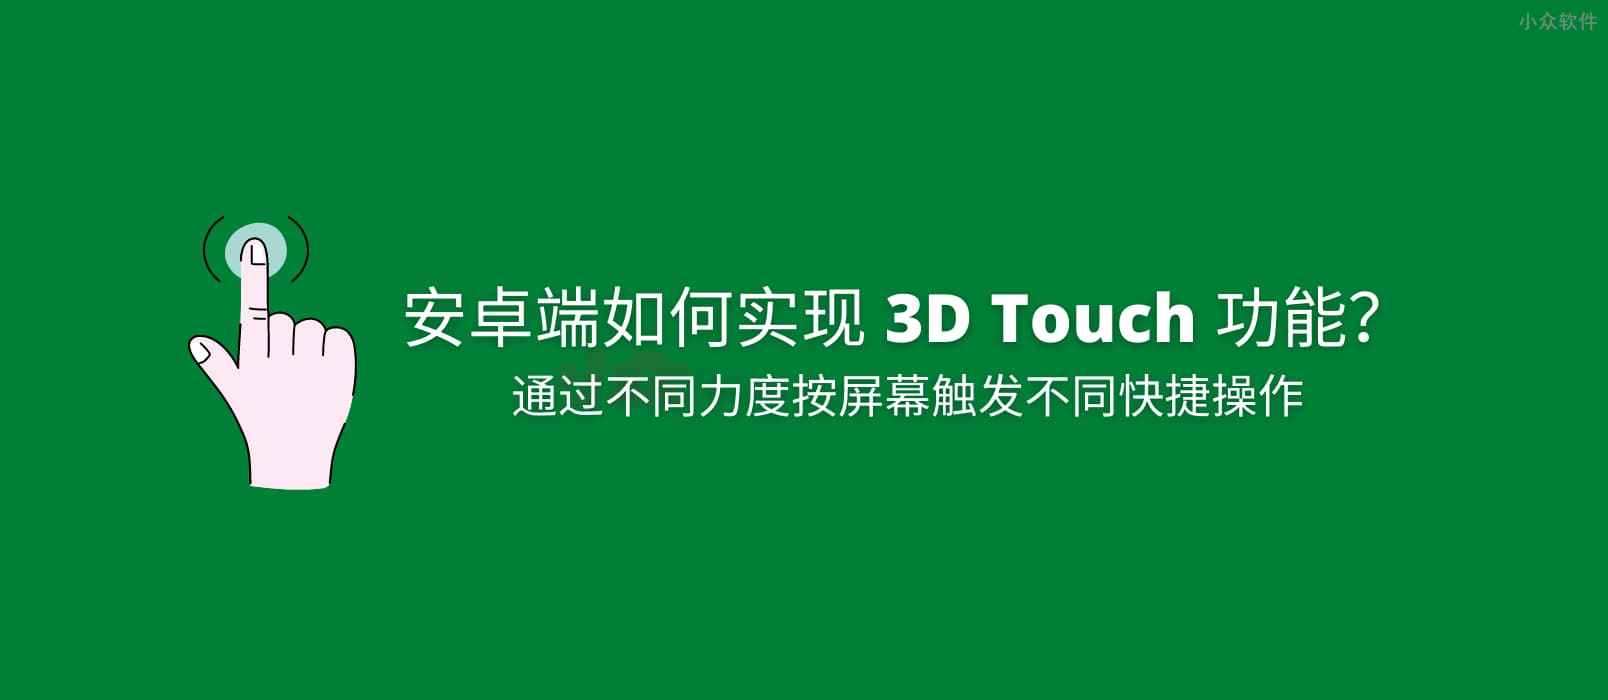 如何实现安卓端 3D Touch 功能？